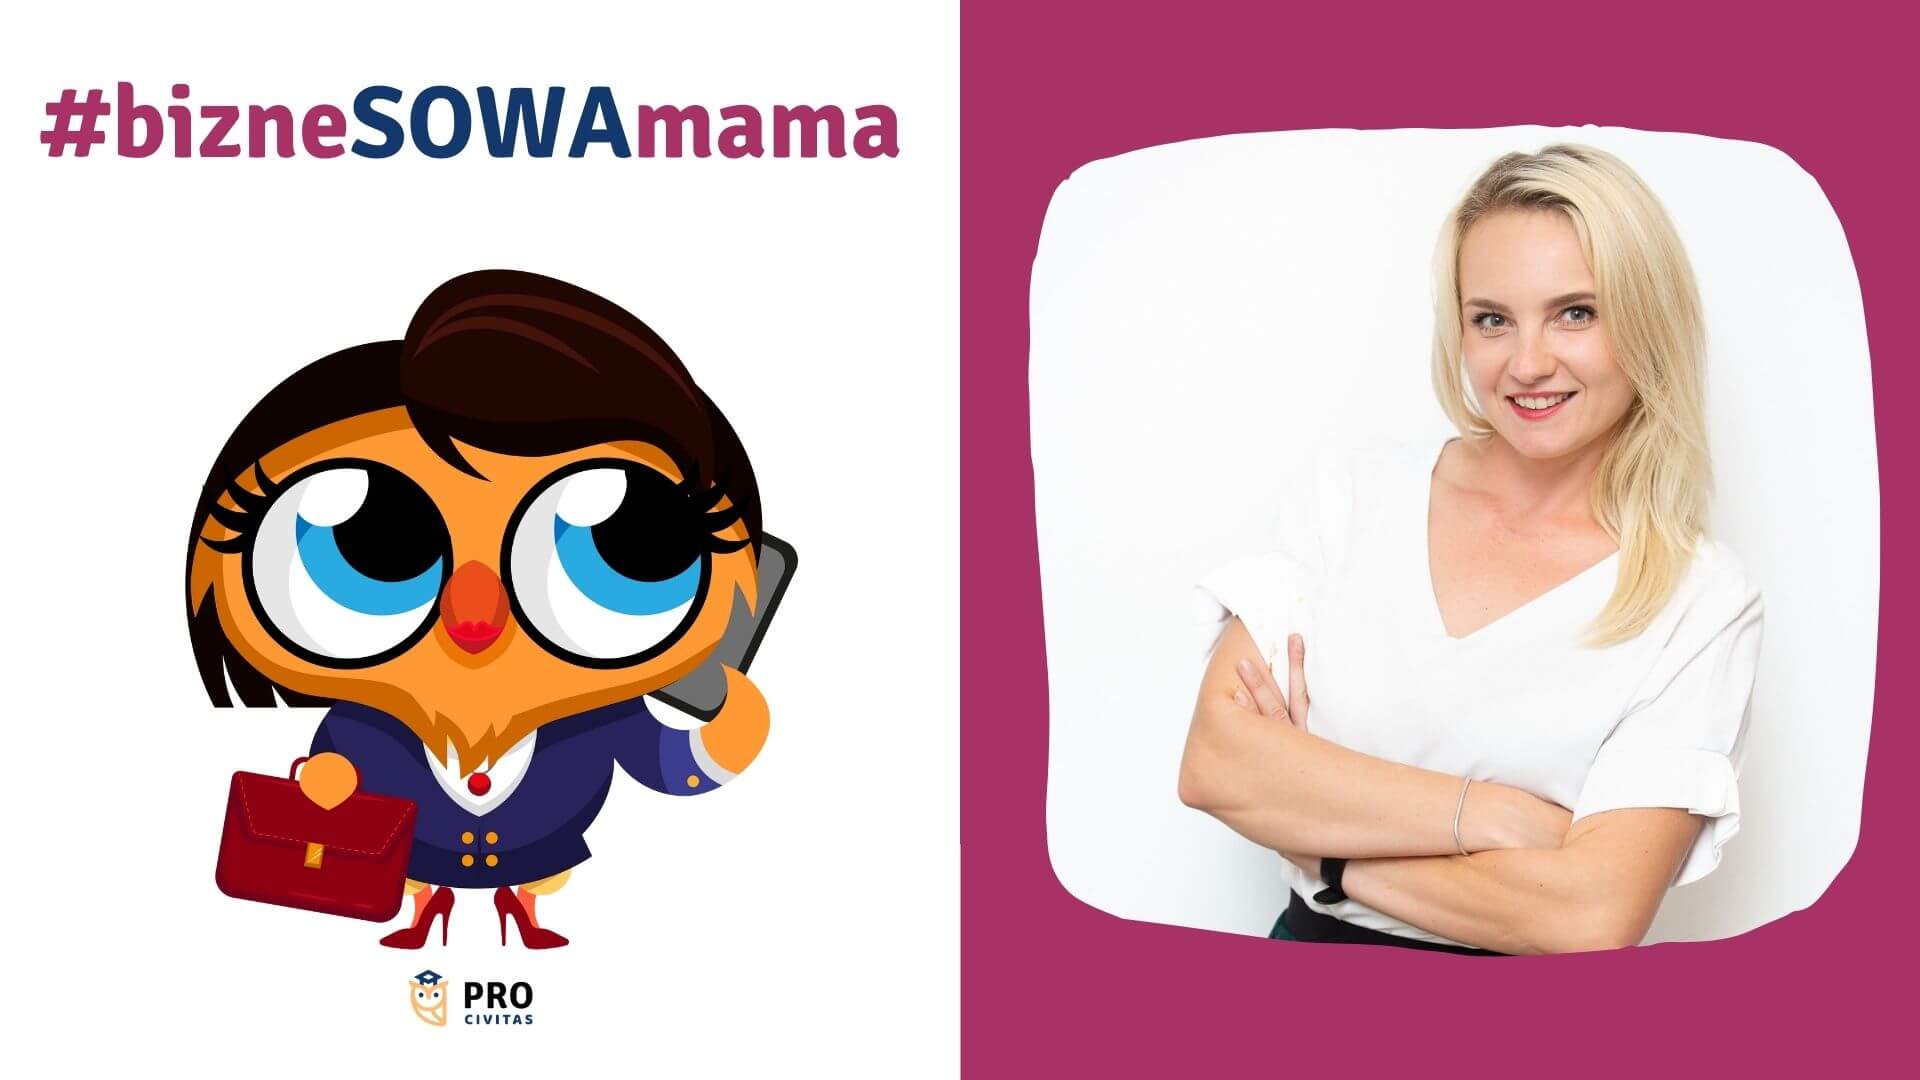 Akcja bizneSOWA mama, odc. 1 - wywiad z Katarzyną Florecką - PRO Civitas